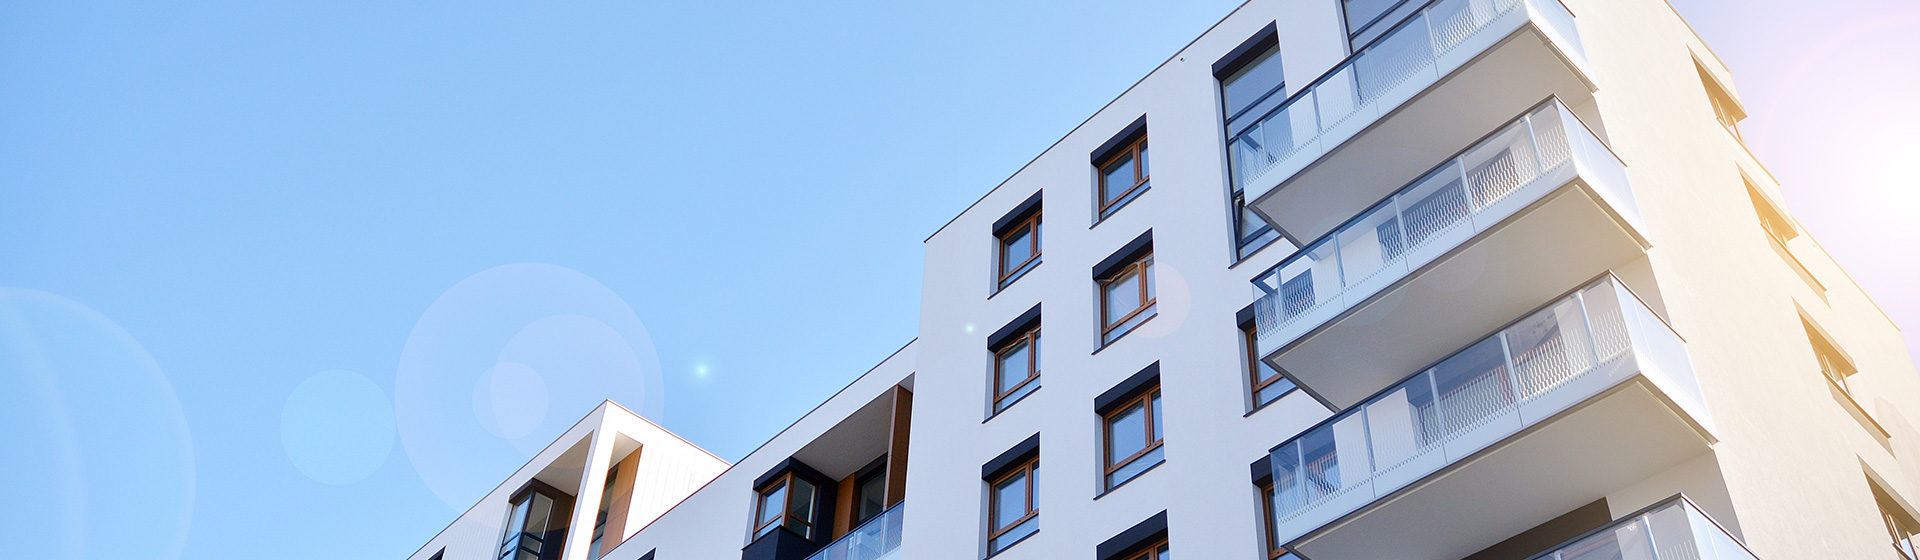 Moderne Mehrfamilienhäuser mit Balkonen unter blauem Himmel – Mietverwaltung inveni consulting